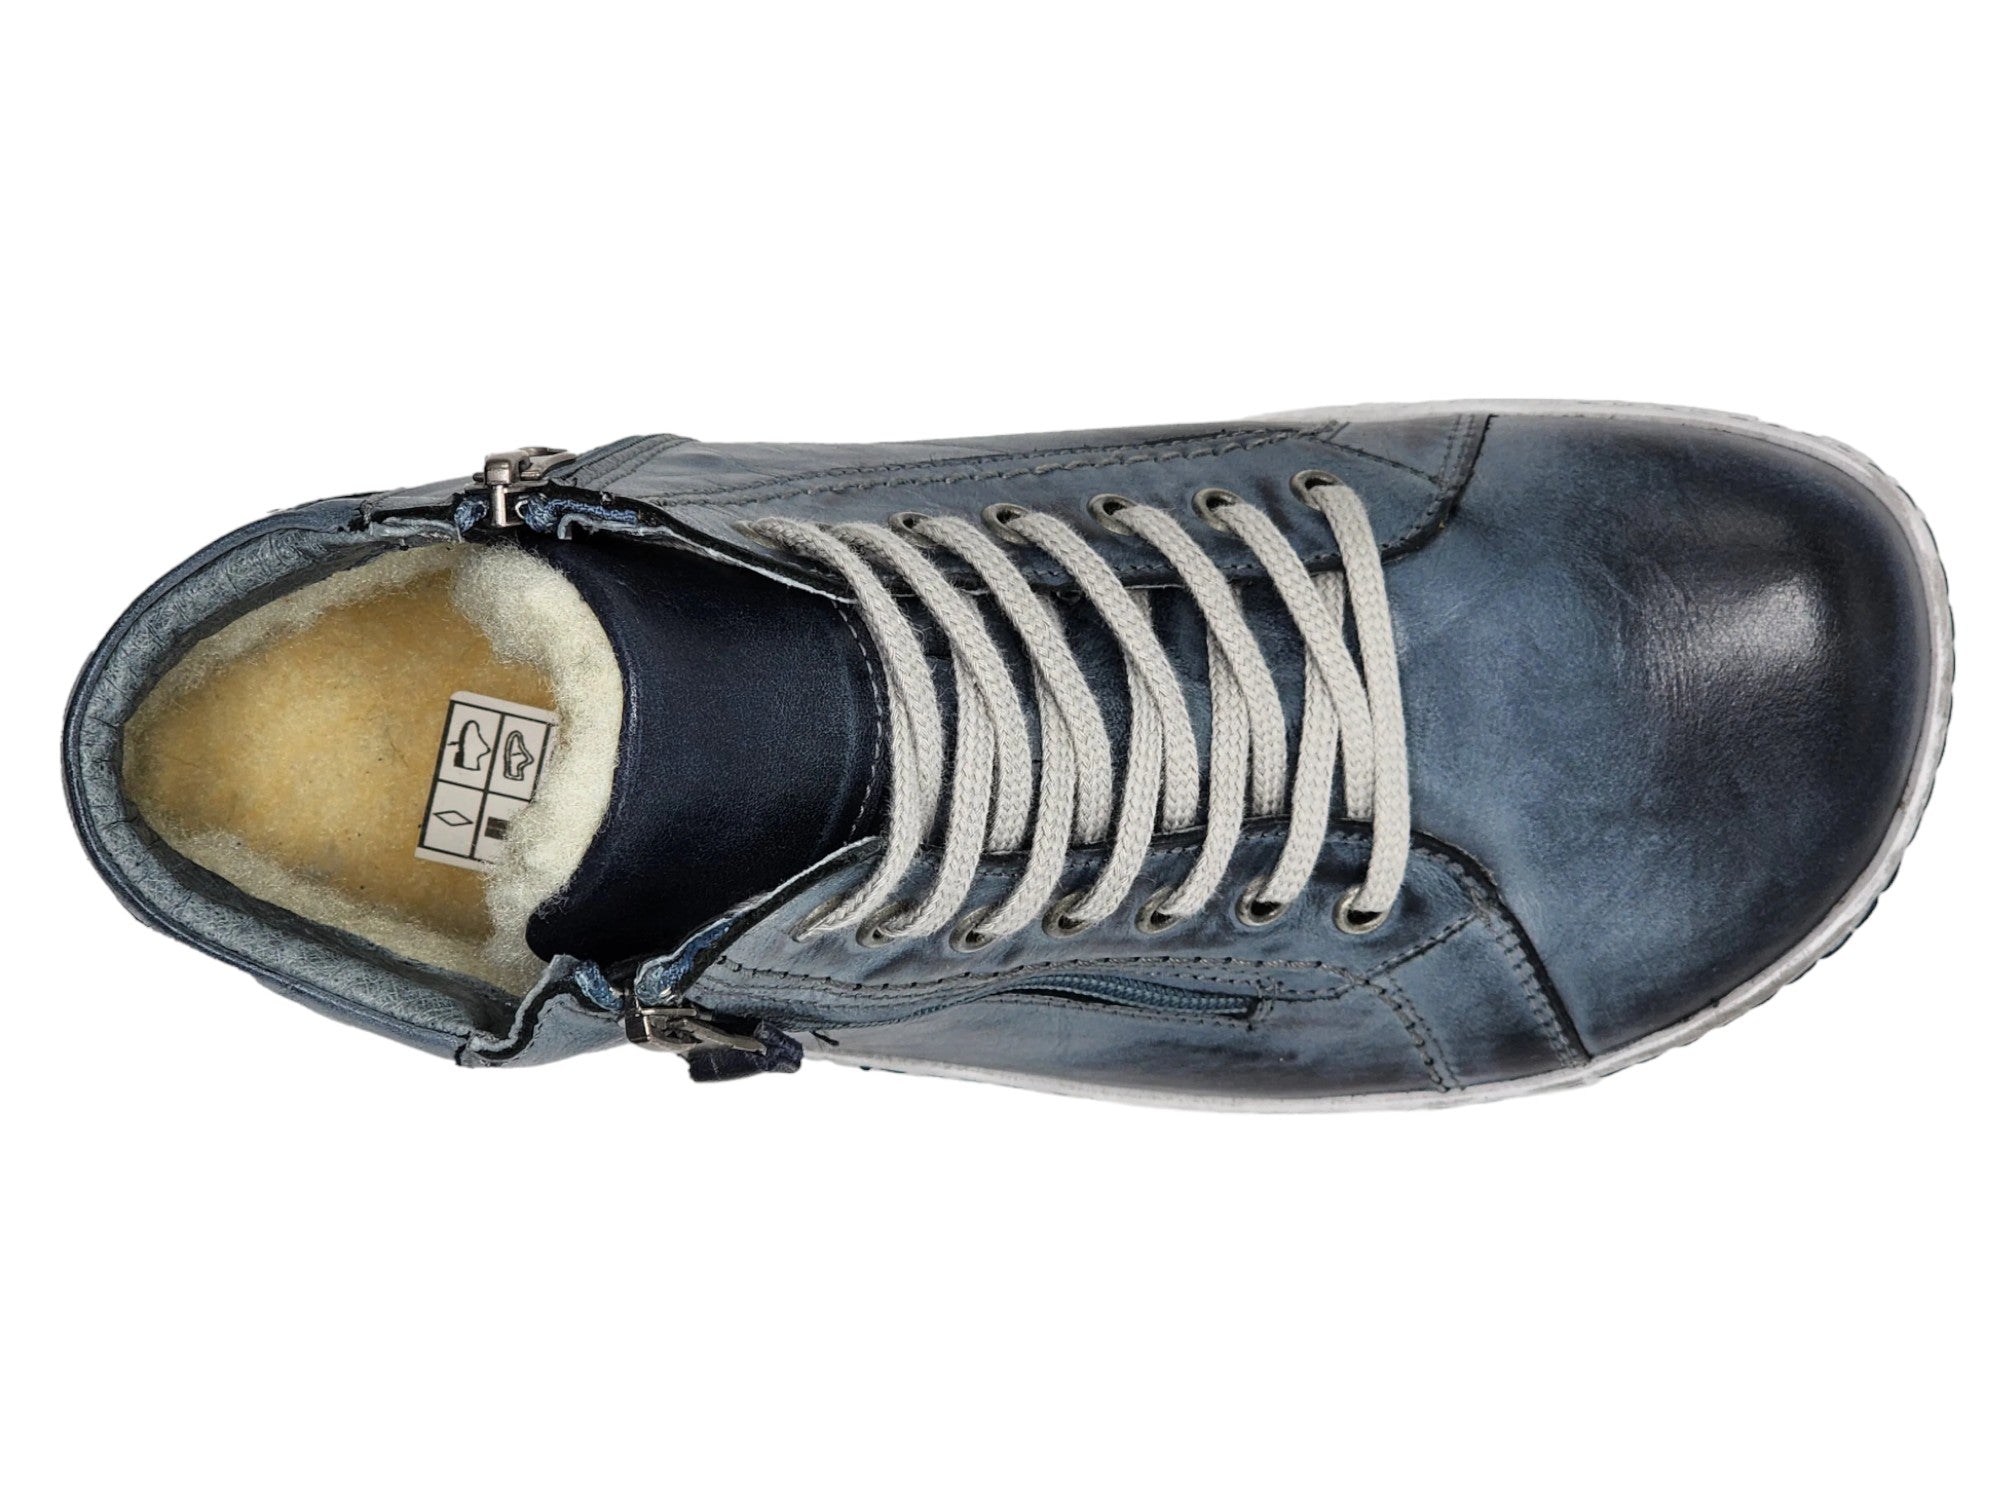 Kacper Bane Zip Sneaker Boot - Men's